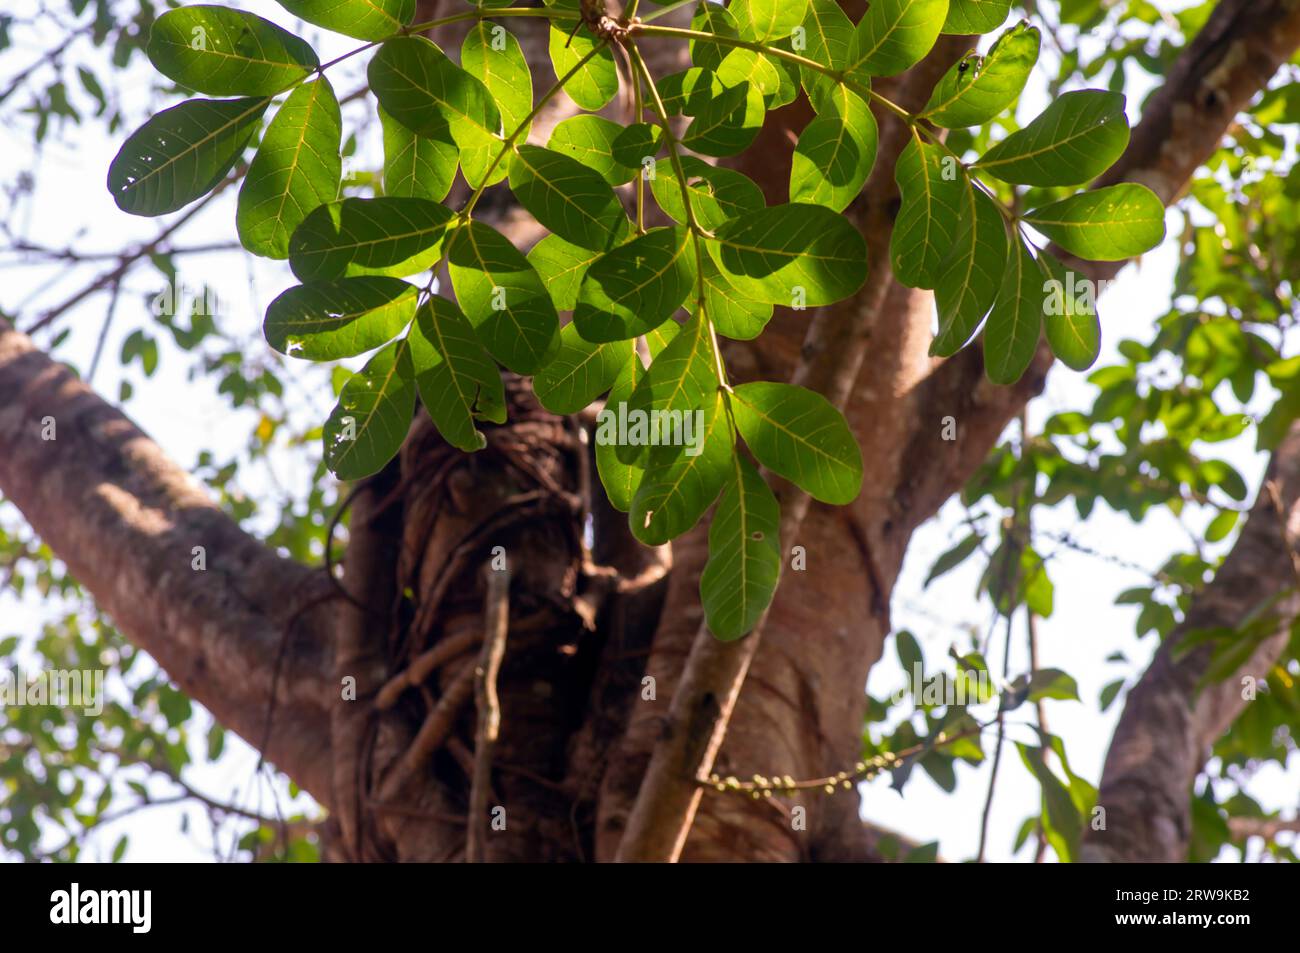 Beringin Iprik, Preh, Ficus retusa, Ficus truncata green leaves, shallow focus Stock Photo